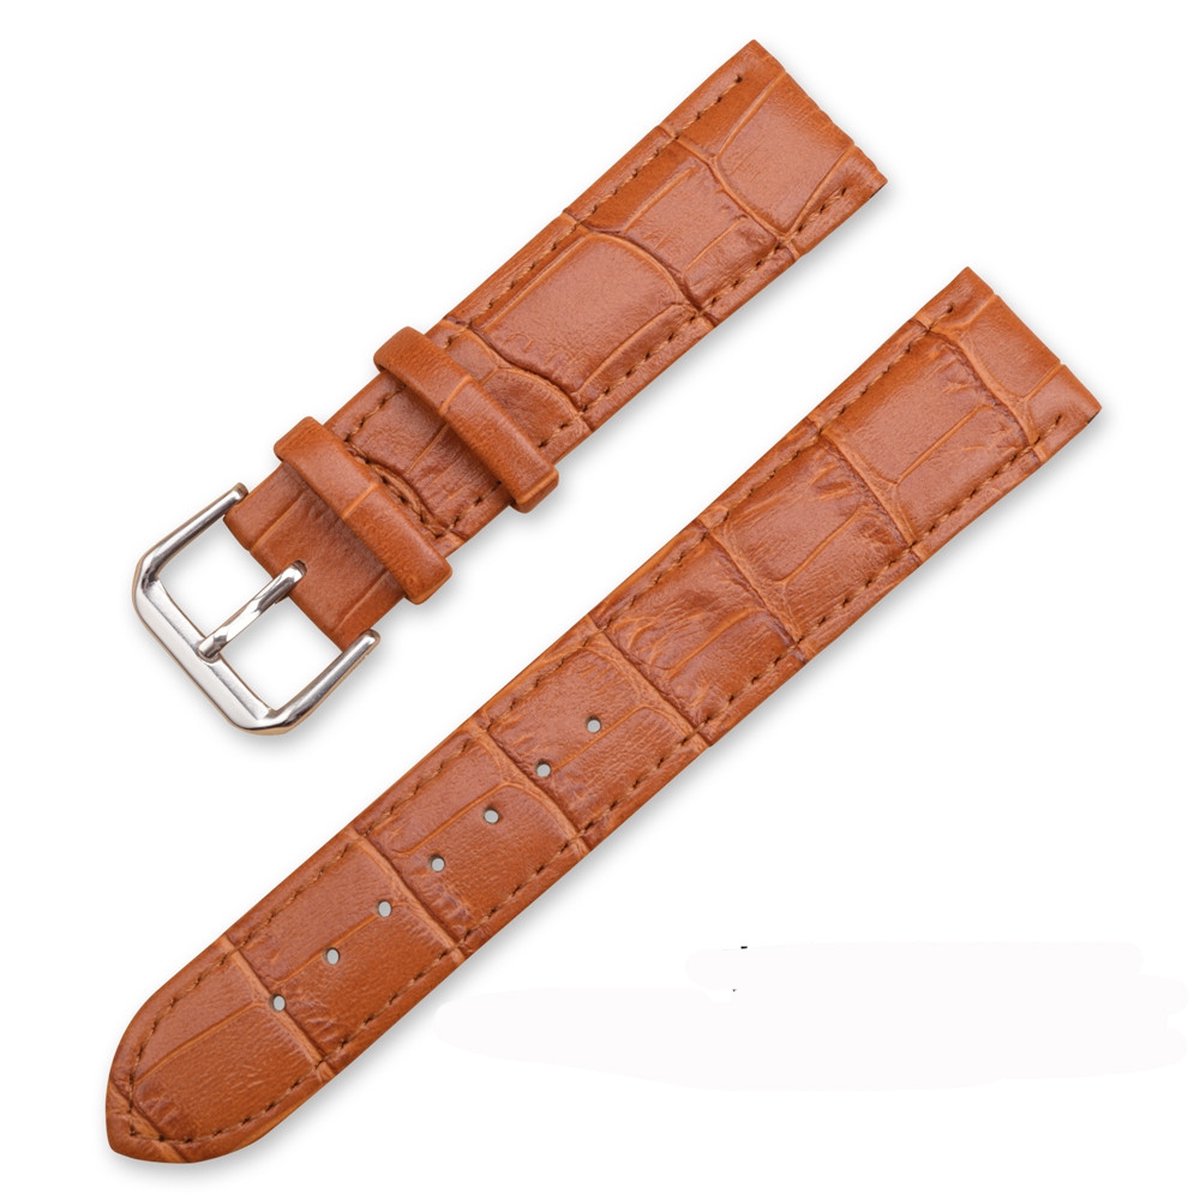 SmartphoneClip® Horlogeband - Leer - 18mm - Cognac - Horlogebandjes